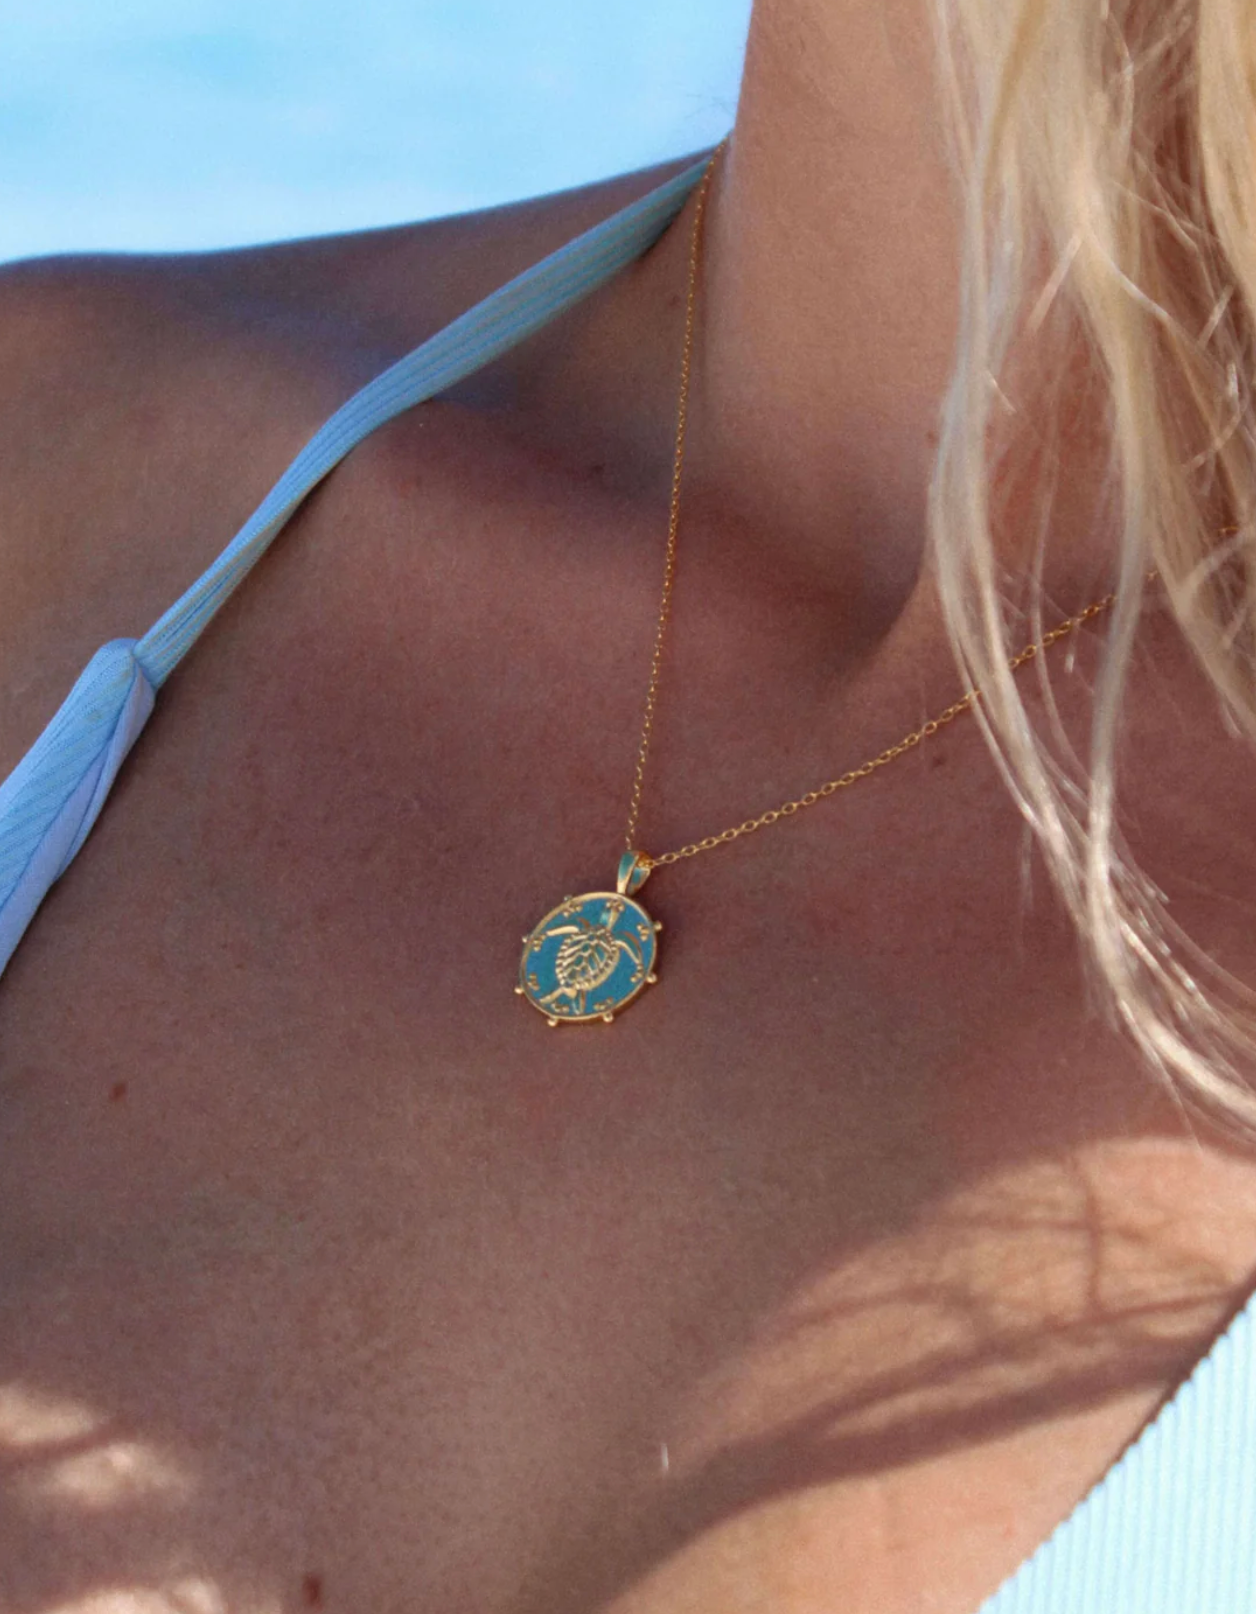 Malakai the Label Lahana Sea Necklace